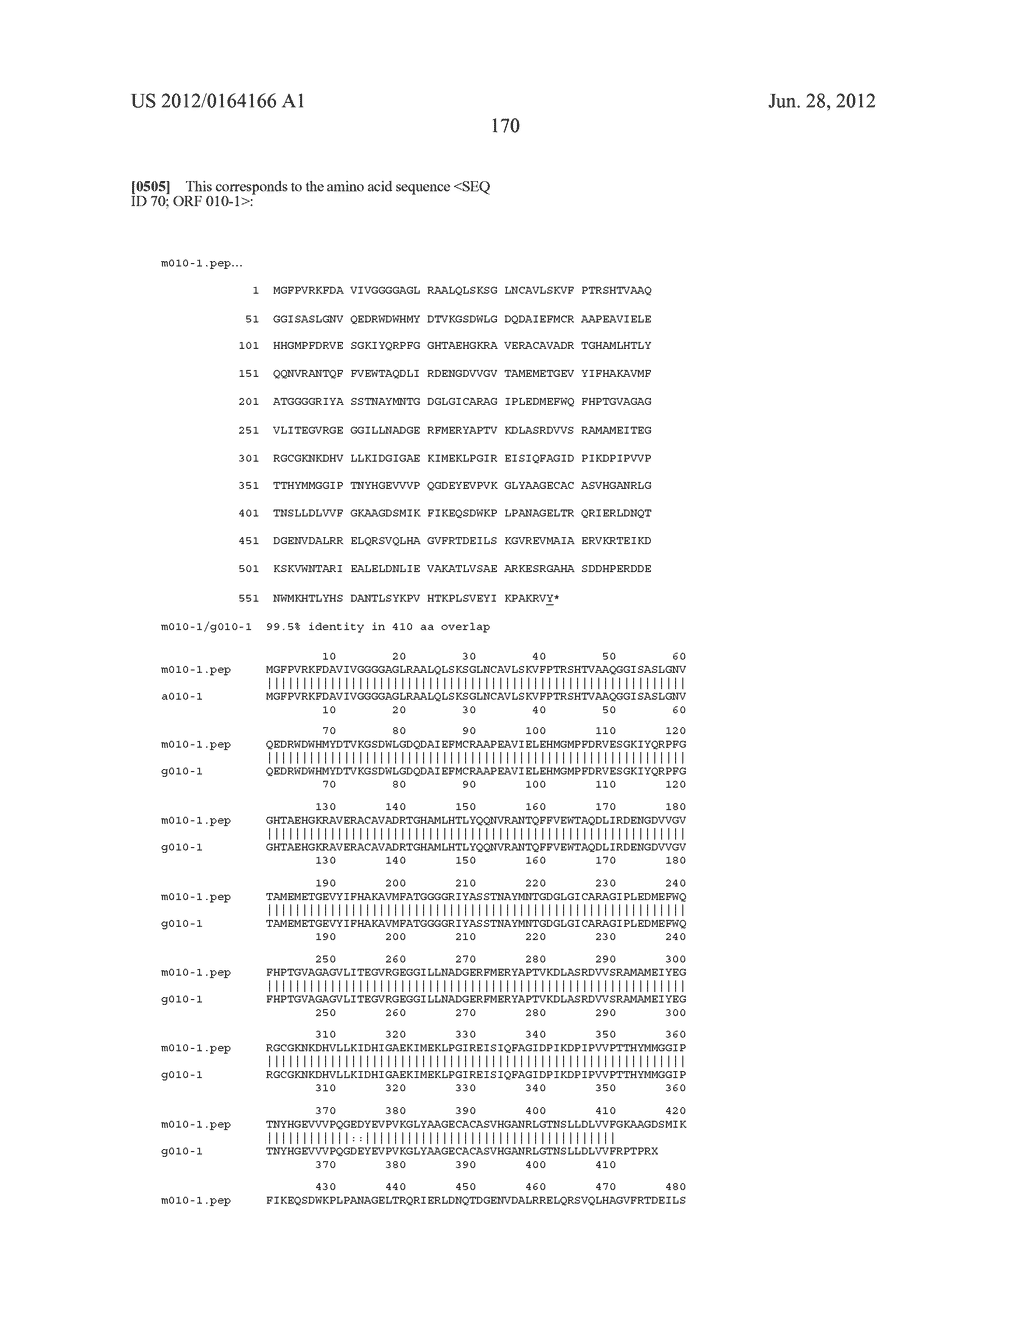 NEISSERIA MENINGITIDIS ANTIGENS AND COMPOSITIONS - diagram, schematic, and image 202